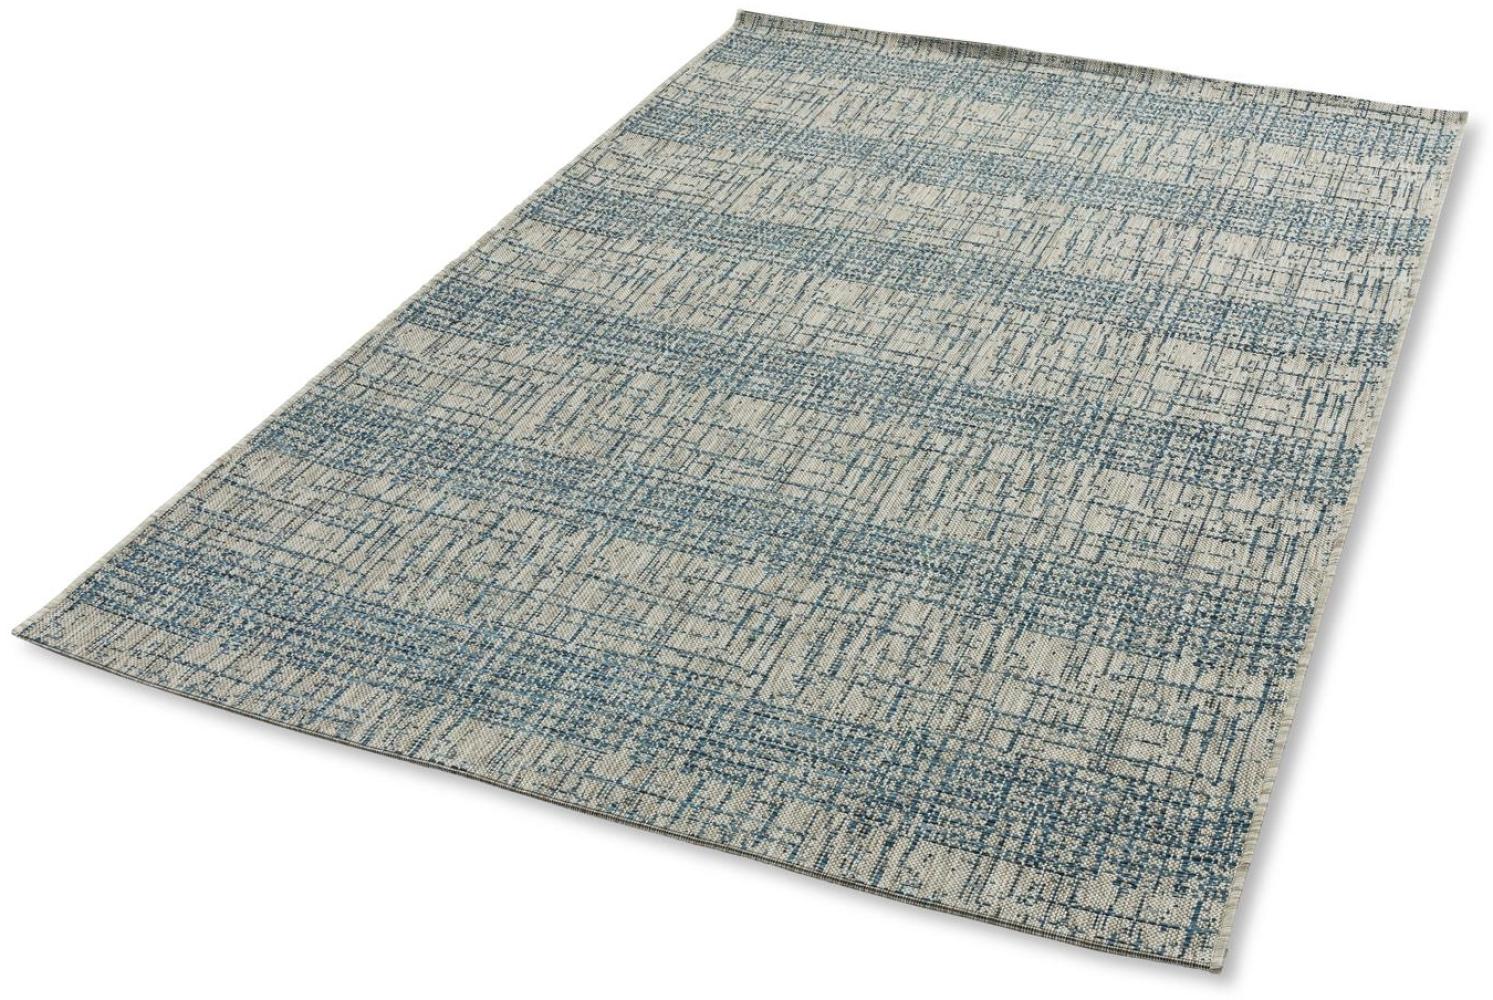 Teppich in blau aus 100% Polypropylen - 290x200x0,5cm (LxBxH) Bild 1